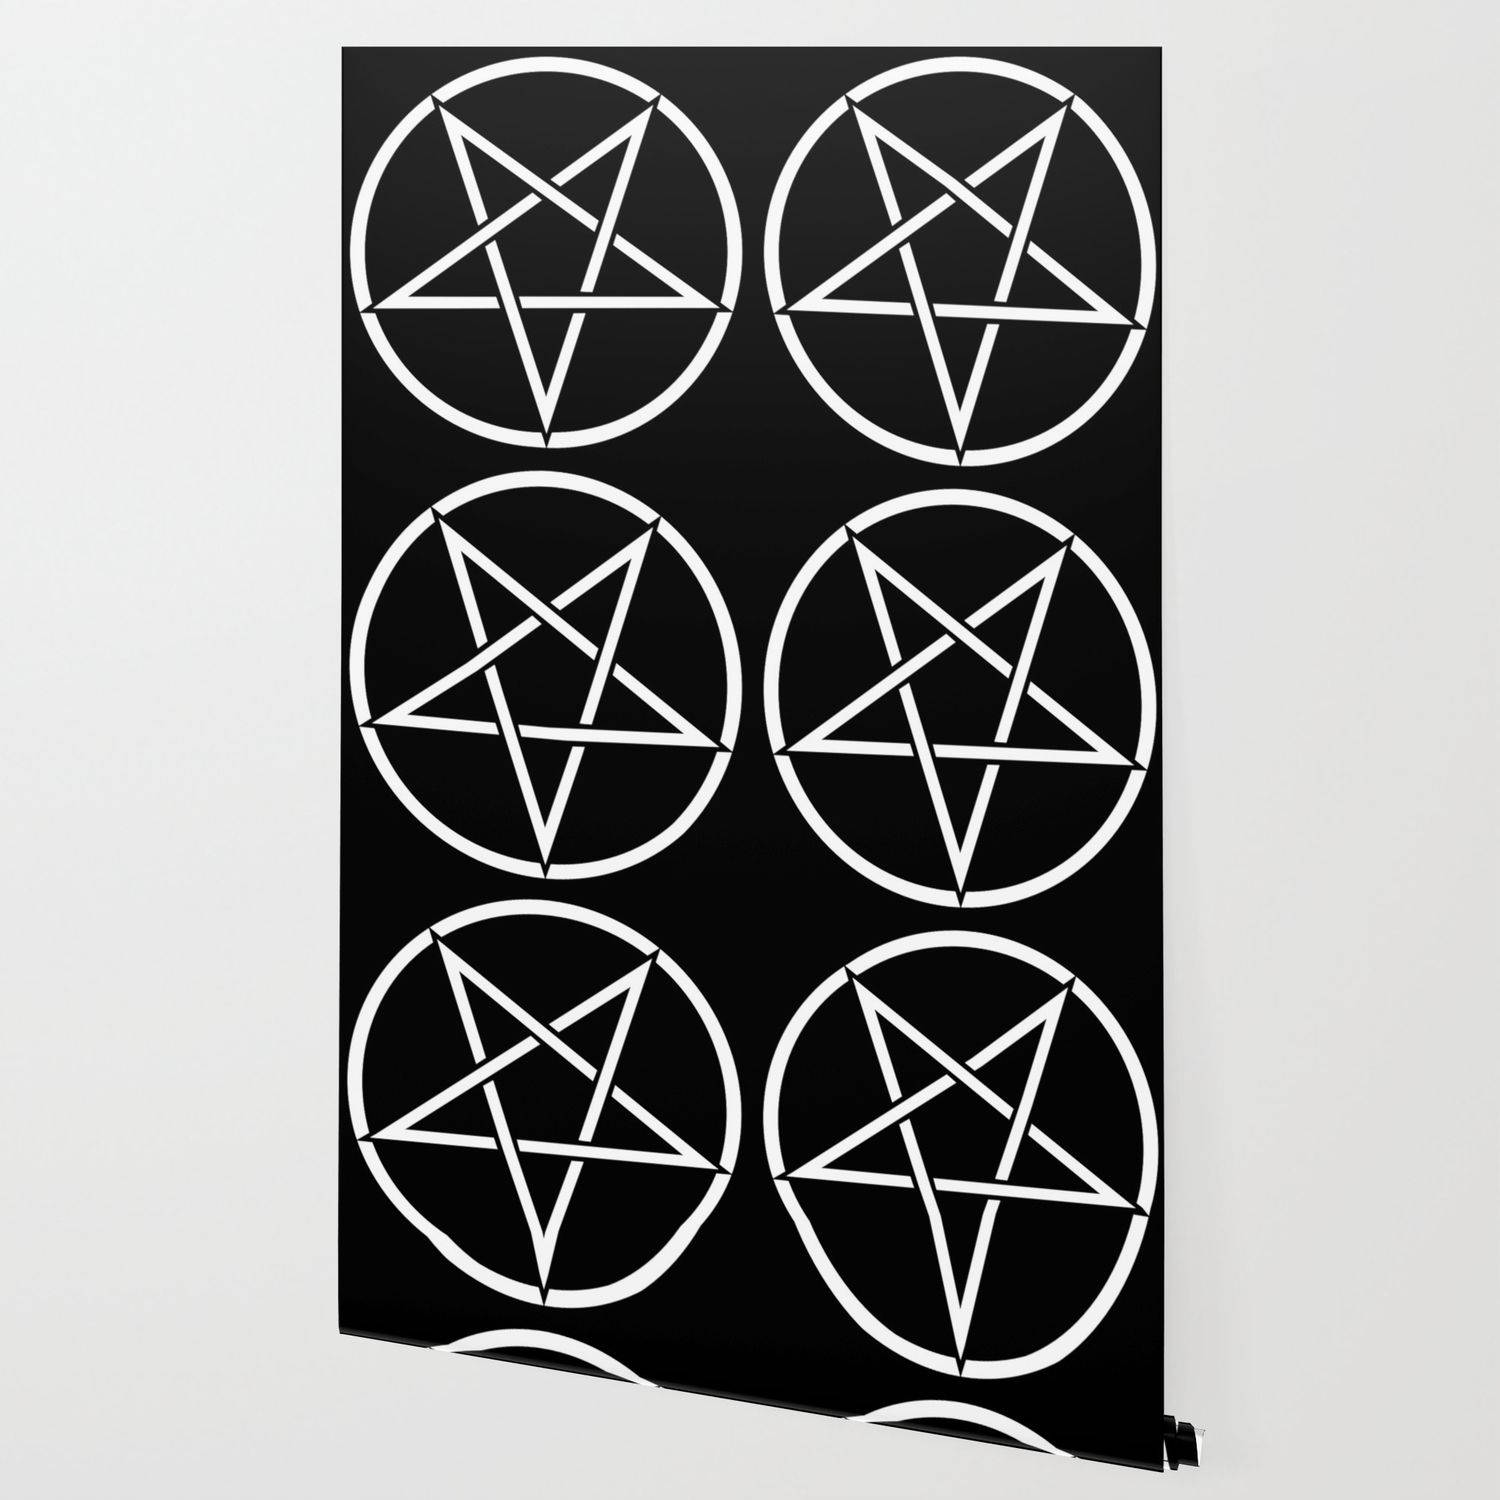 Six Pentagrams In Black Background